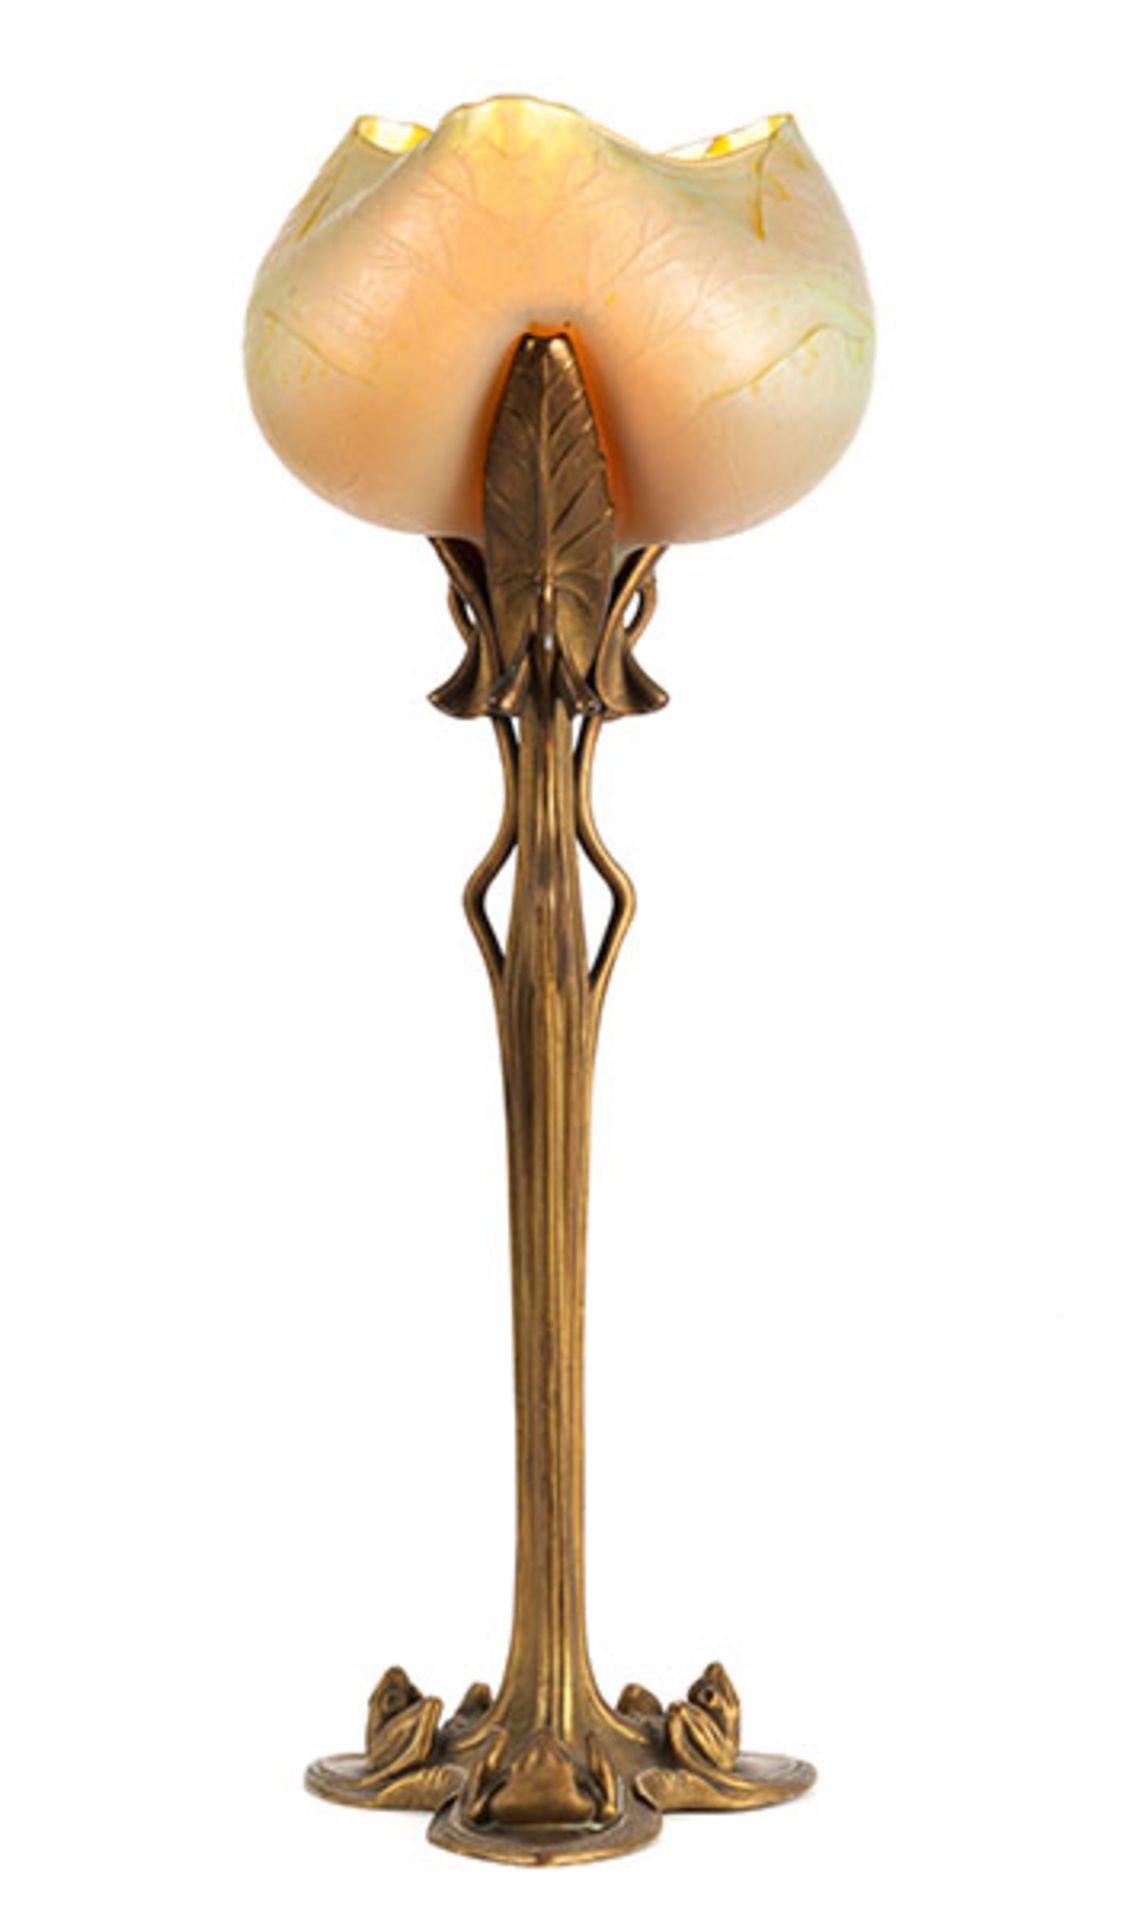 Extrem seltene Nénuphar Tischlampe Höhe: 74 cm. Fuß signiert "L. Majorelle Nancy", Lampenschirm - Bild 5 aus 10